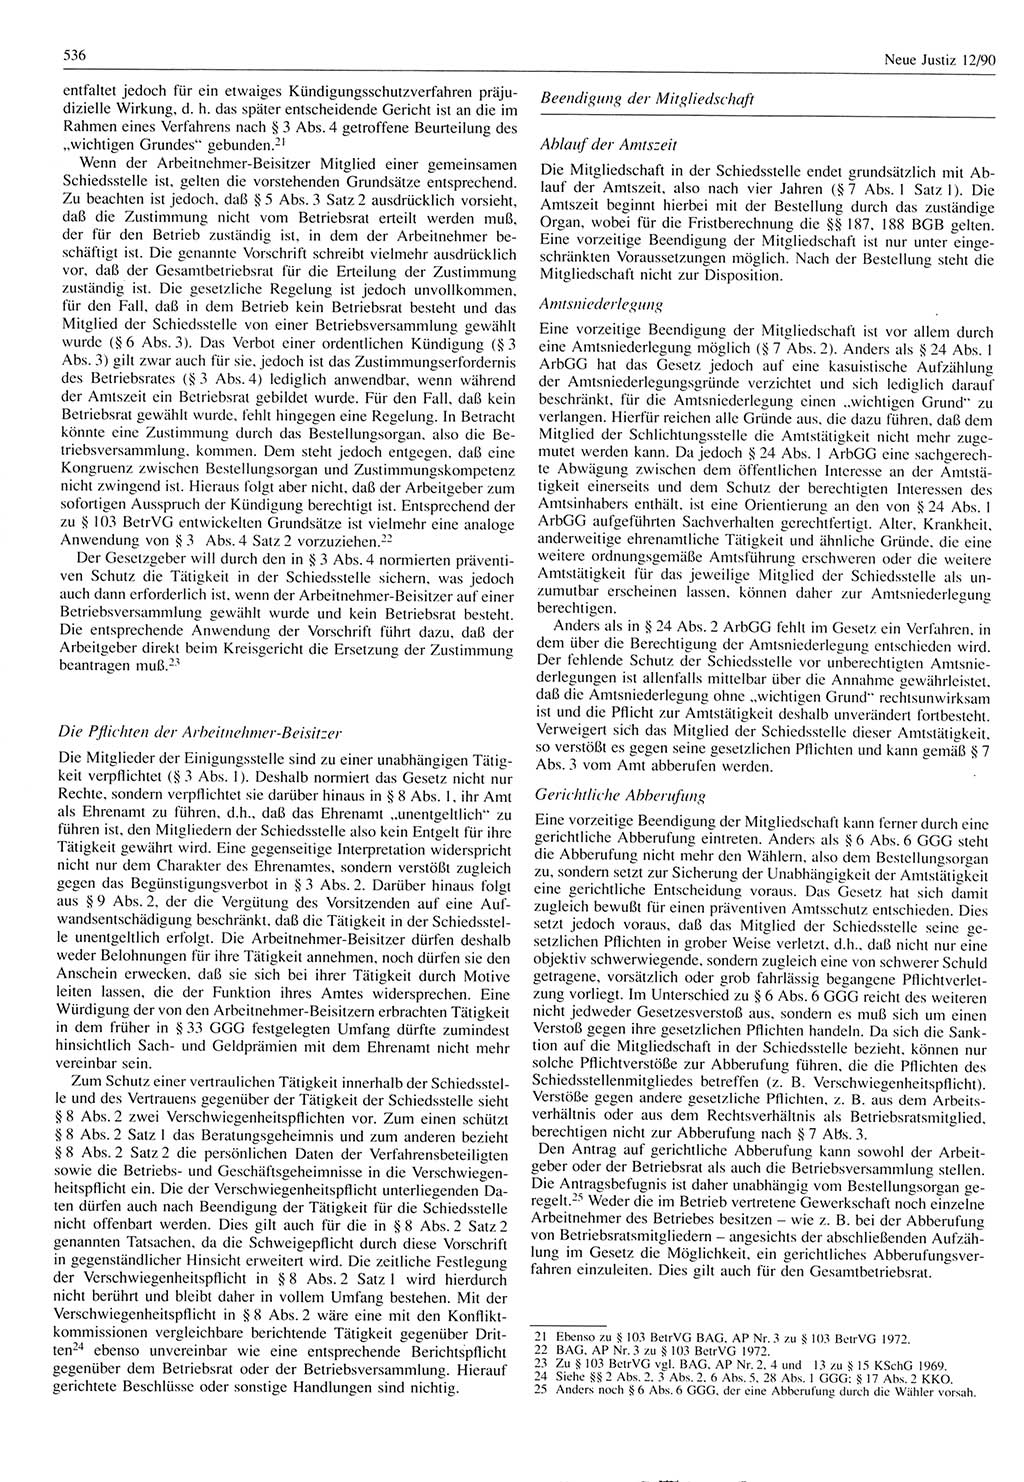 Neue Justiz (NJ), Zeitschrift für Rechtsetzung und Rechtsanwendung [Deutsche Demokratische Republik (DDR)], 44. Jahrgang 1990, Seite 536 (NJ DDR 1990, S. 536)